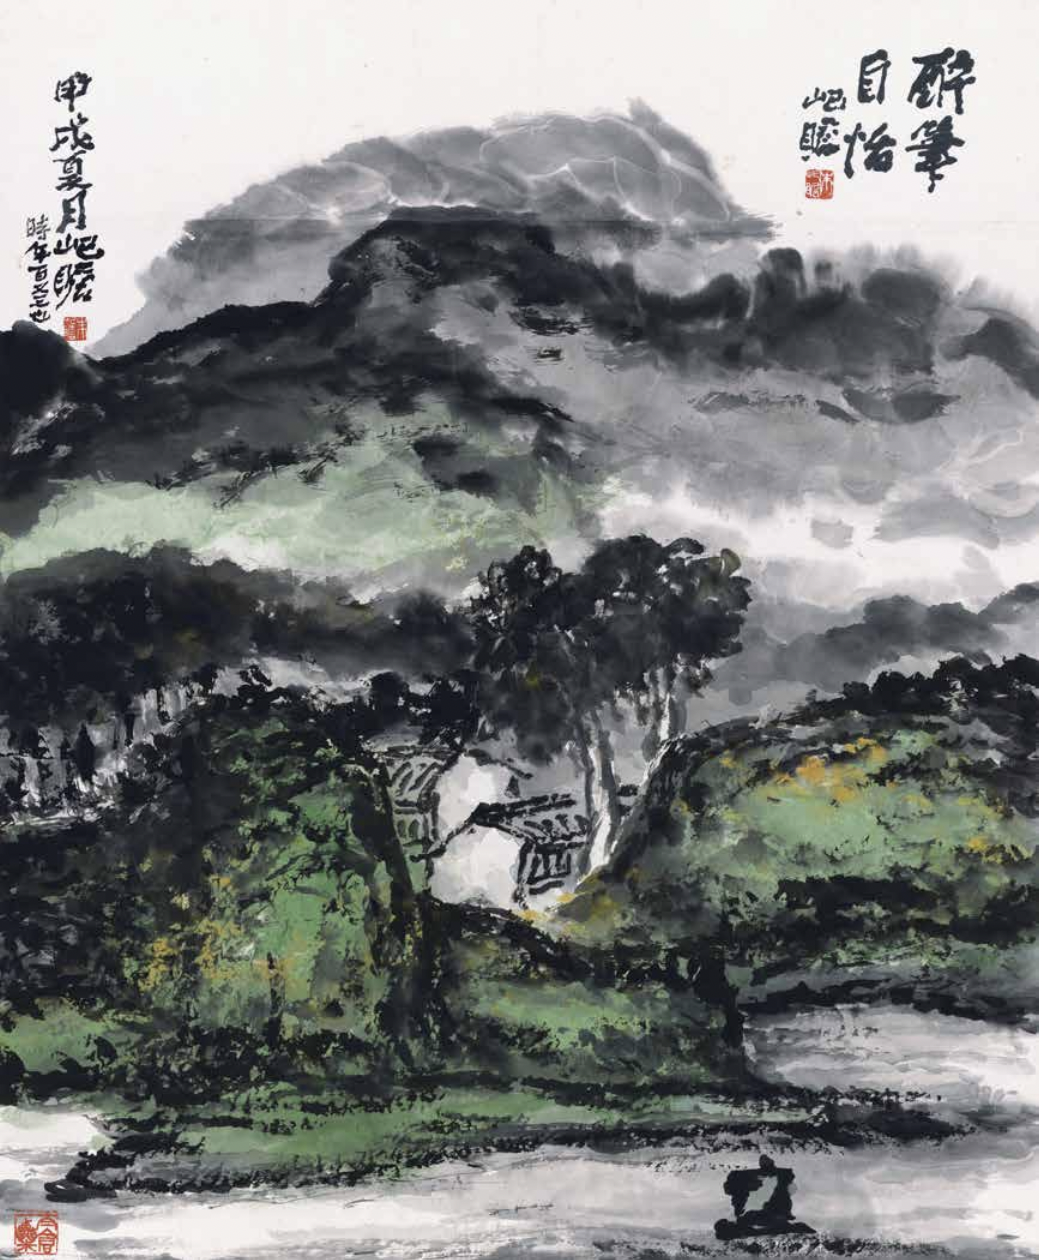 《二十世纪江南名城名家——朱屺瞻》作品展即将开幕